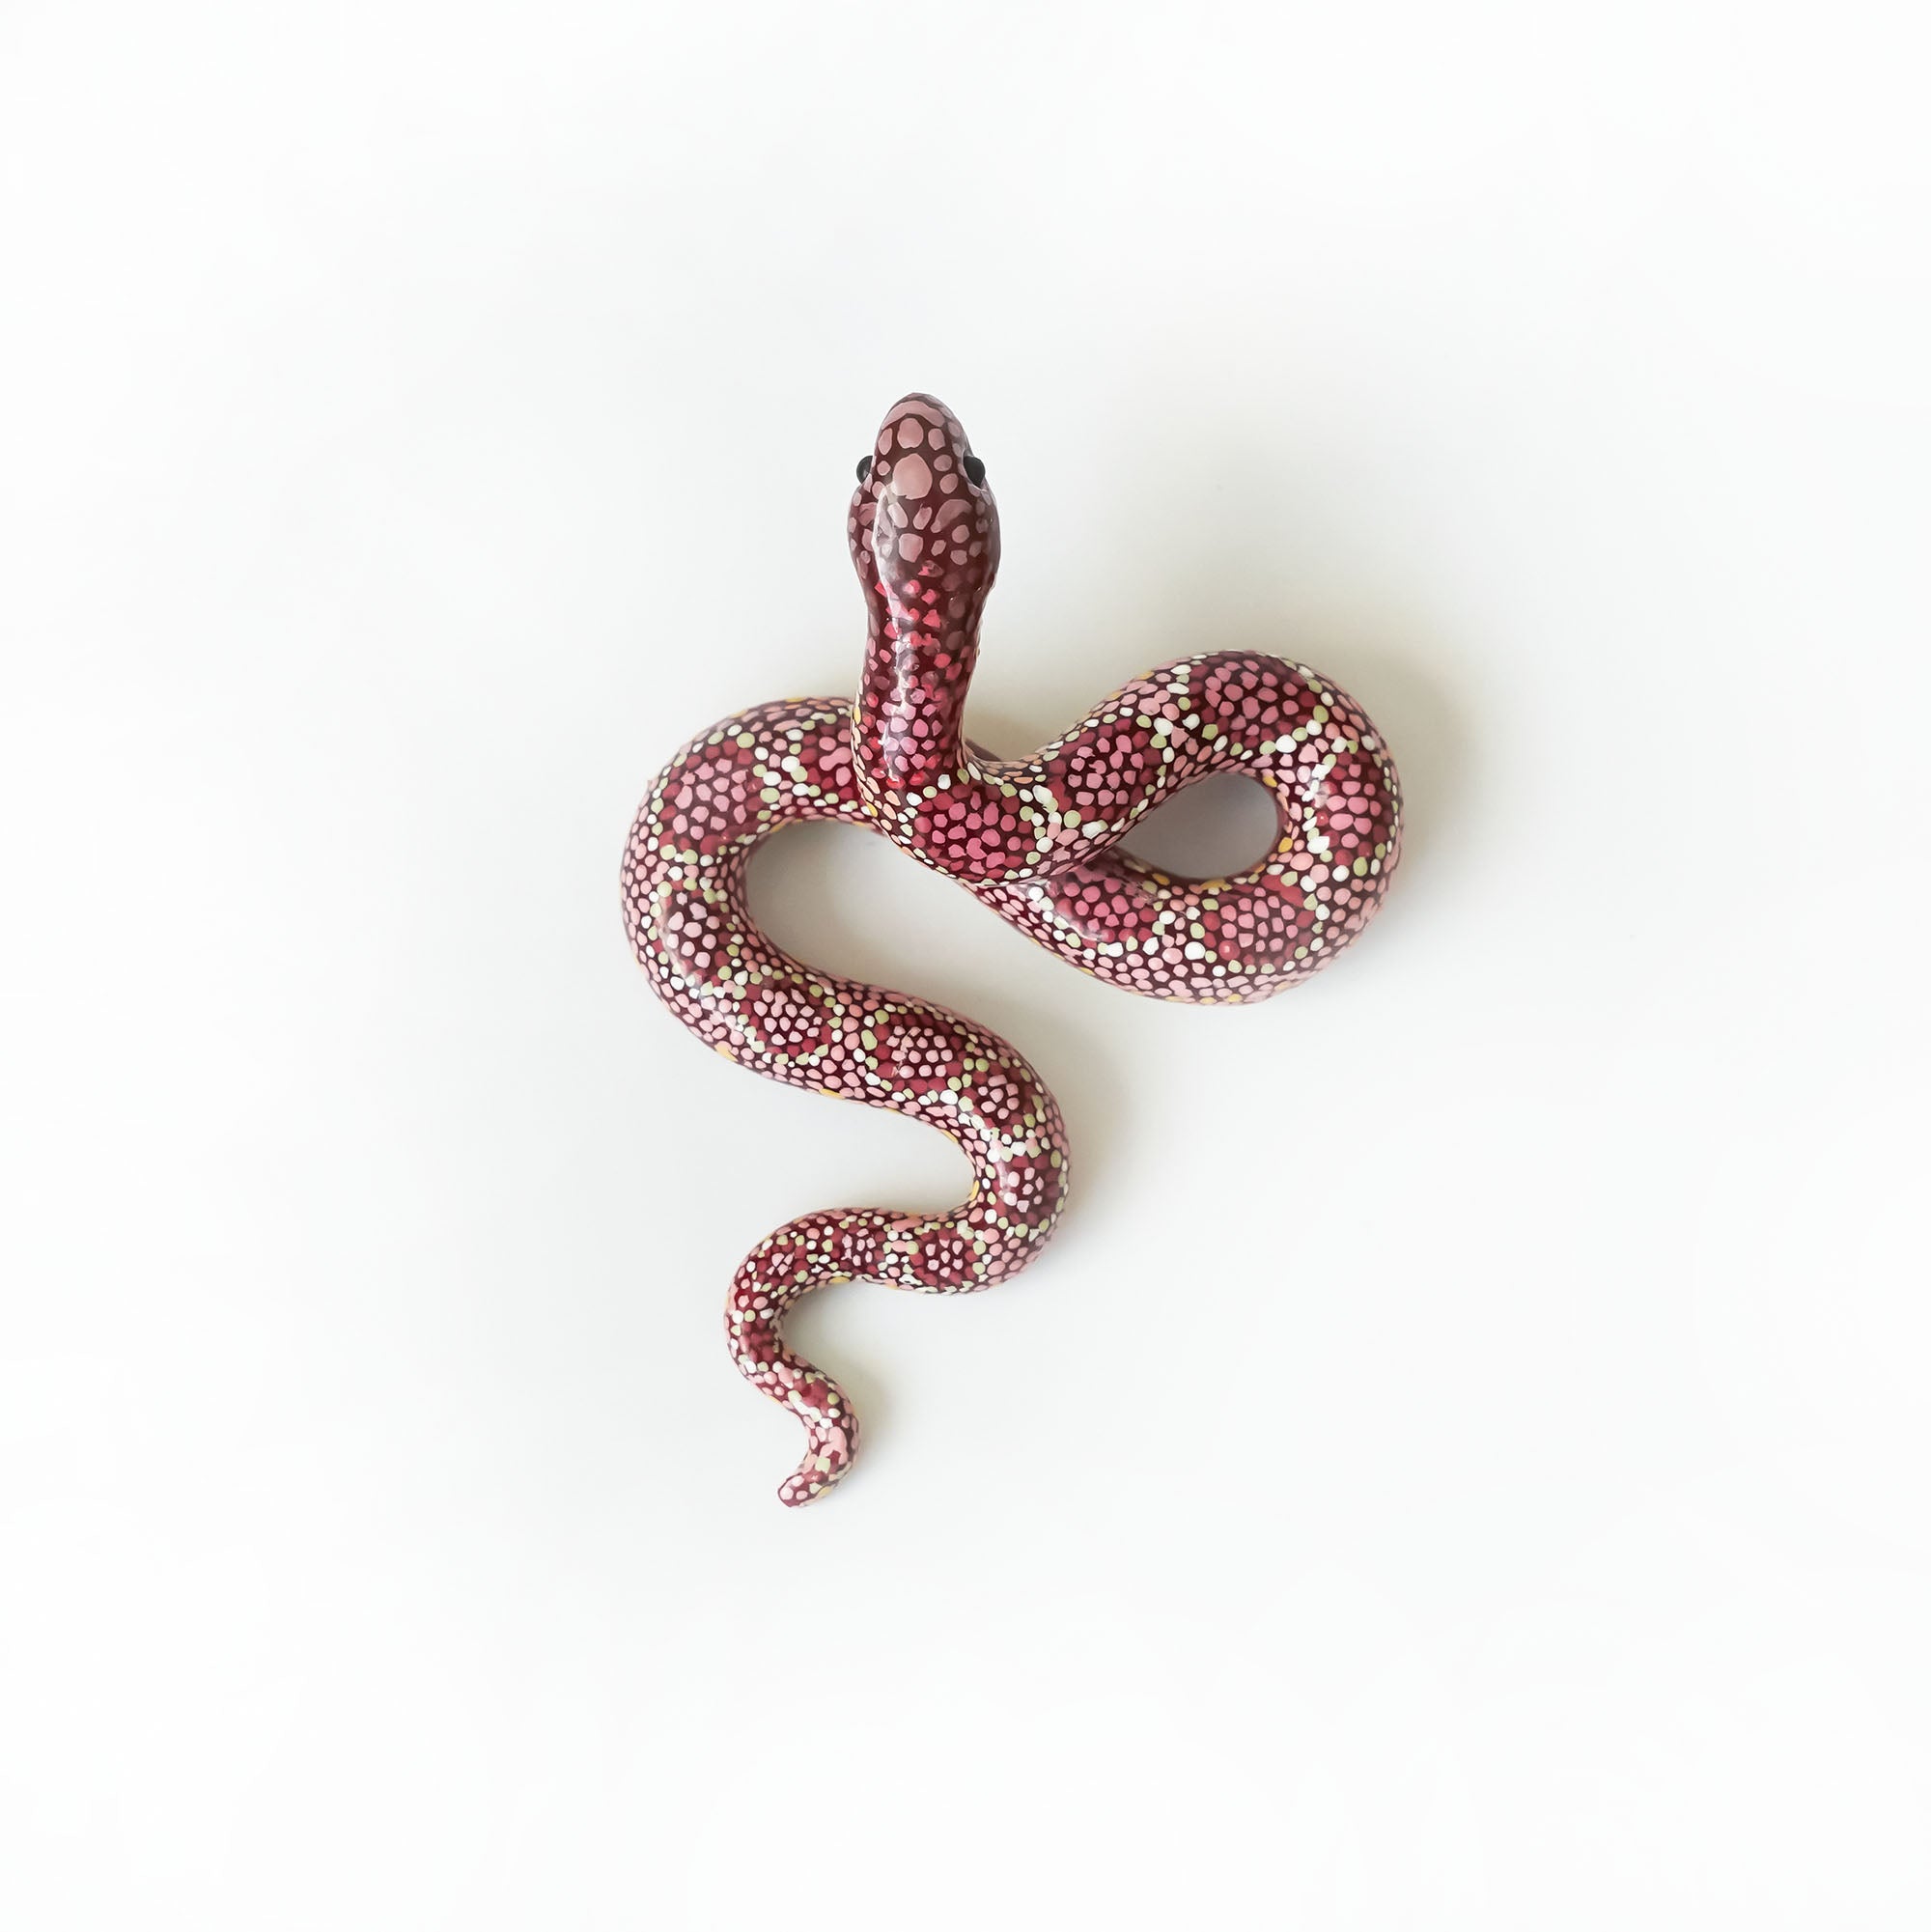 Maroon snake figurine